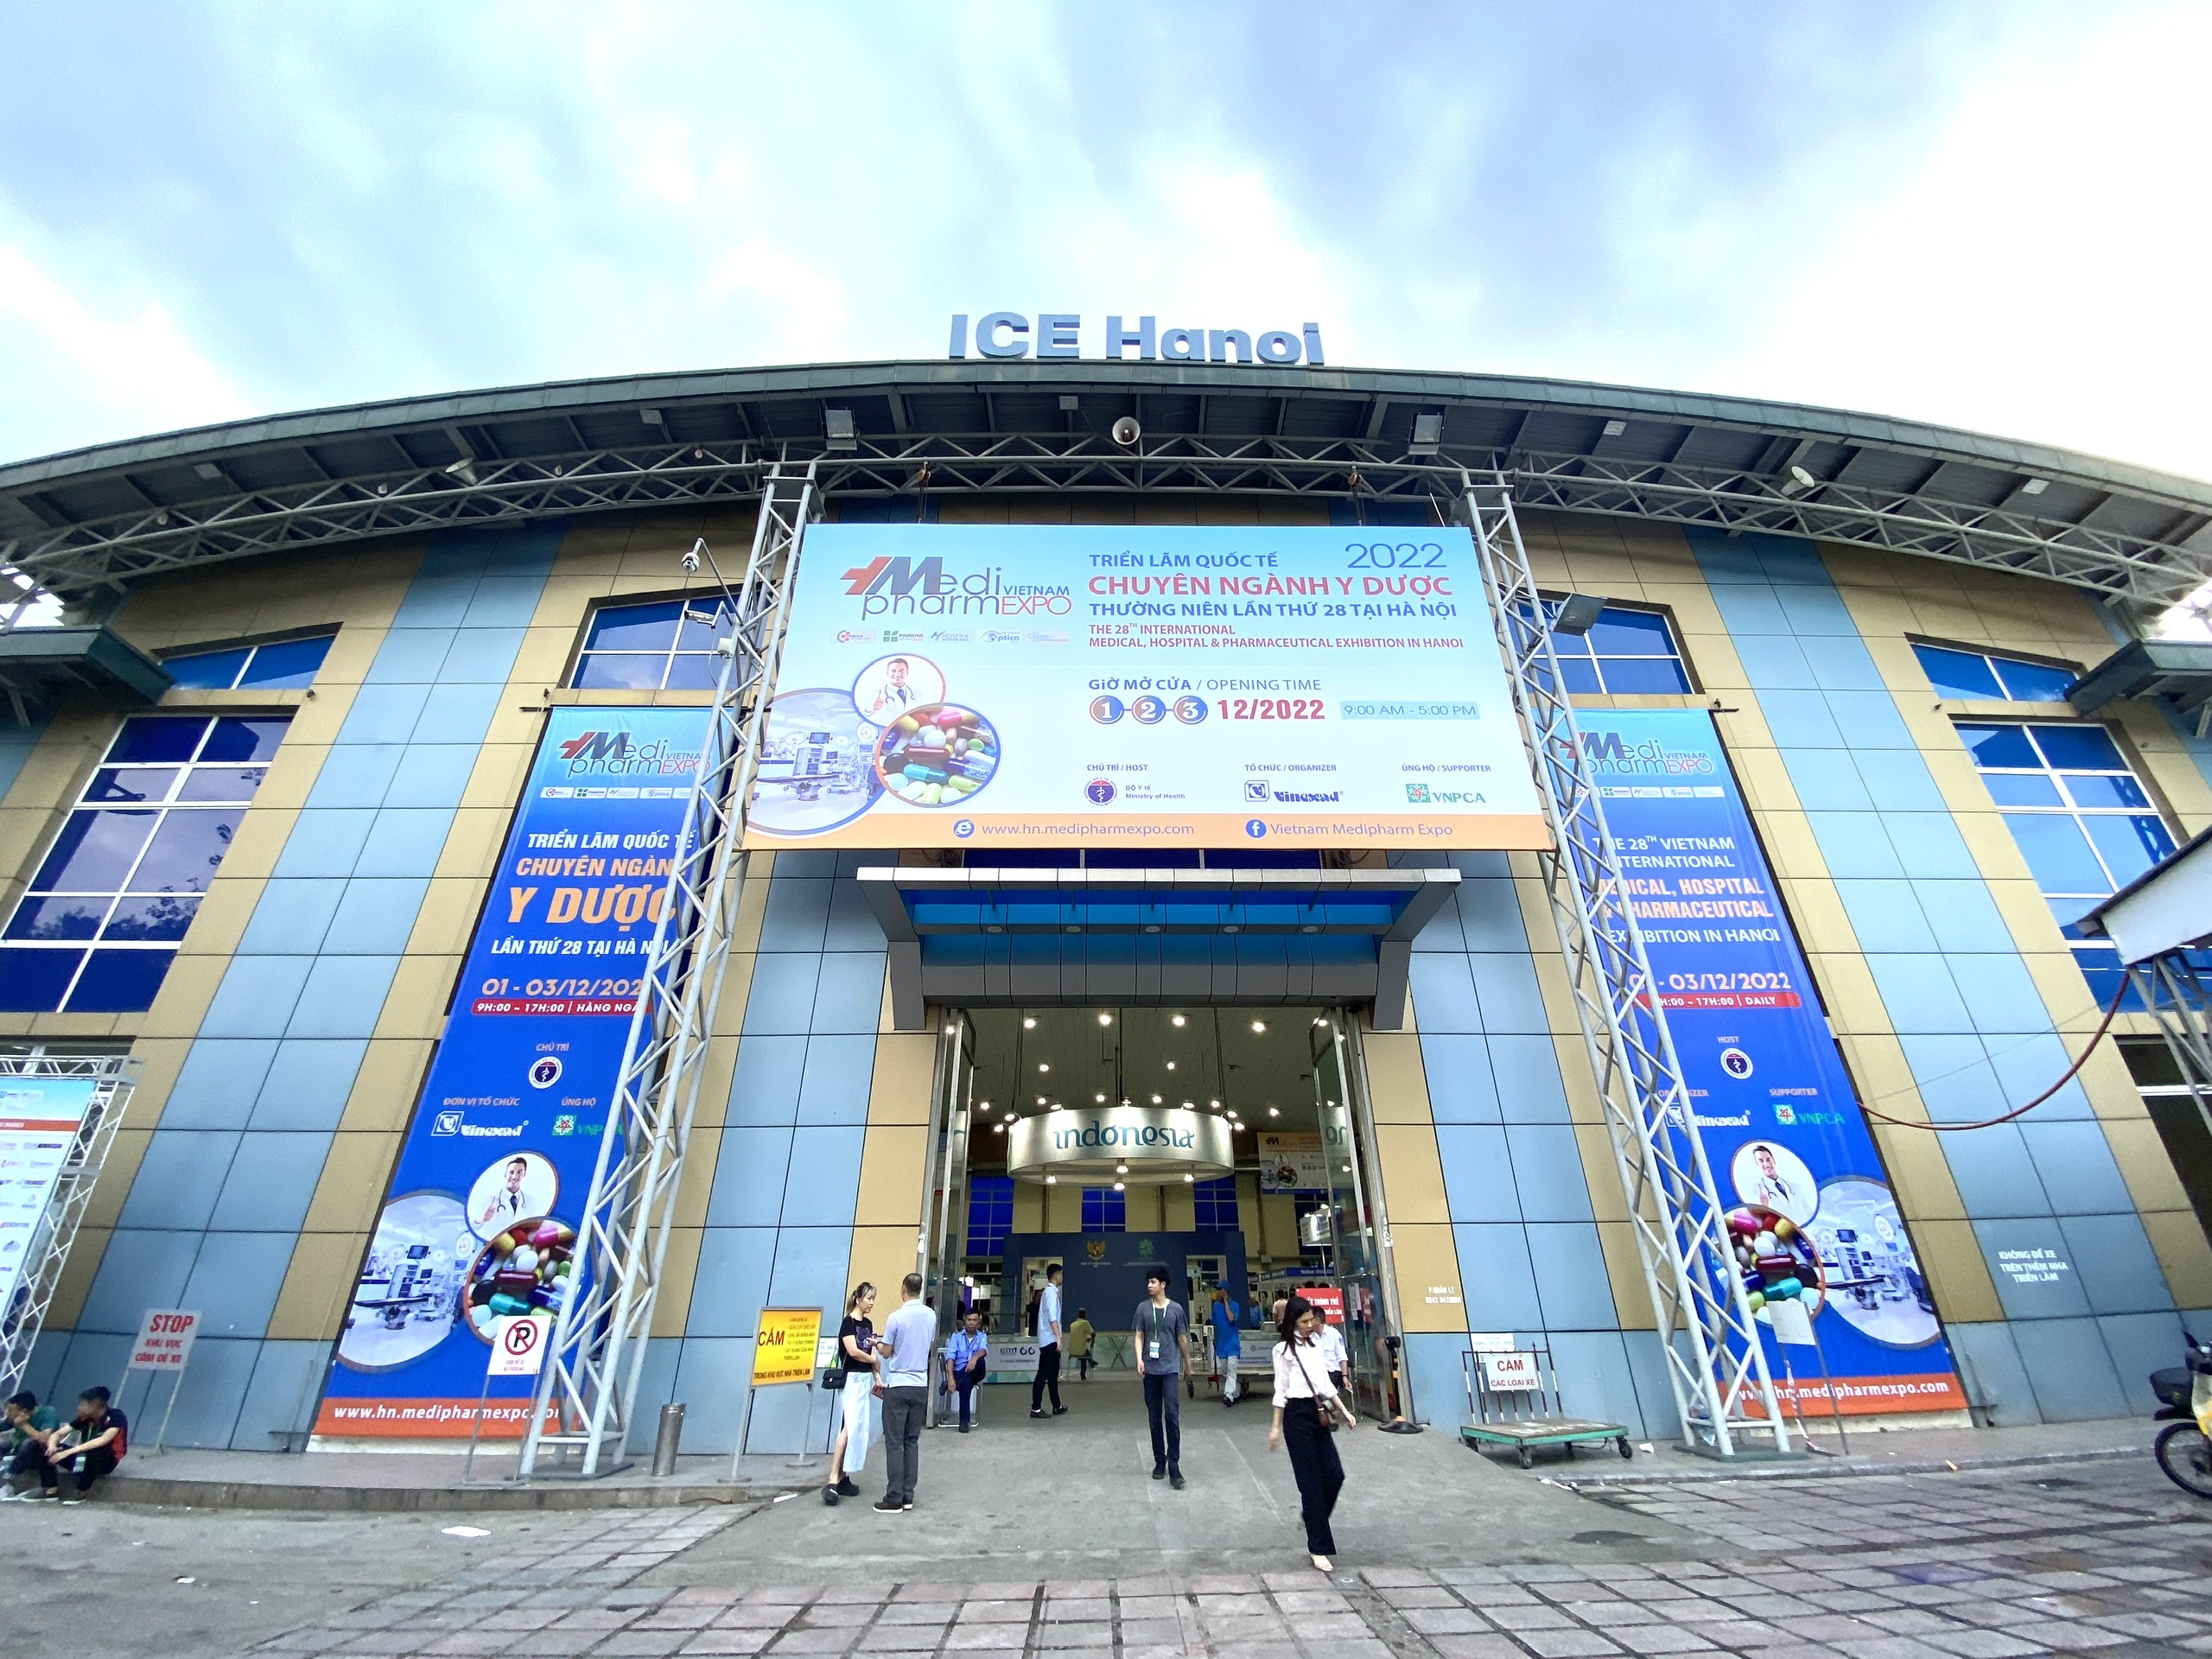 ELESUN tại triển lãm quốc tế chuyên ngành y dược thường niên lần thứ 27 tại Hà Nội